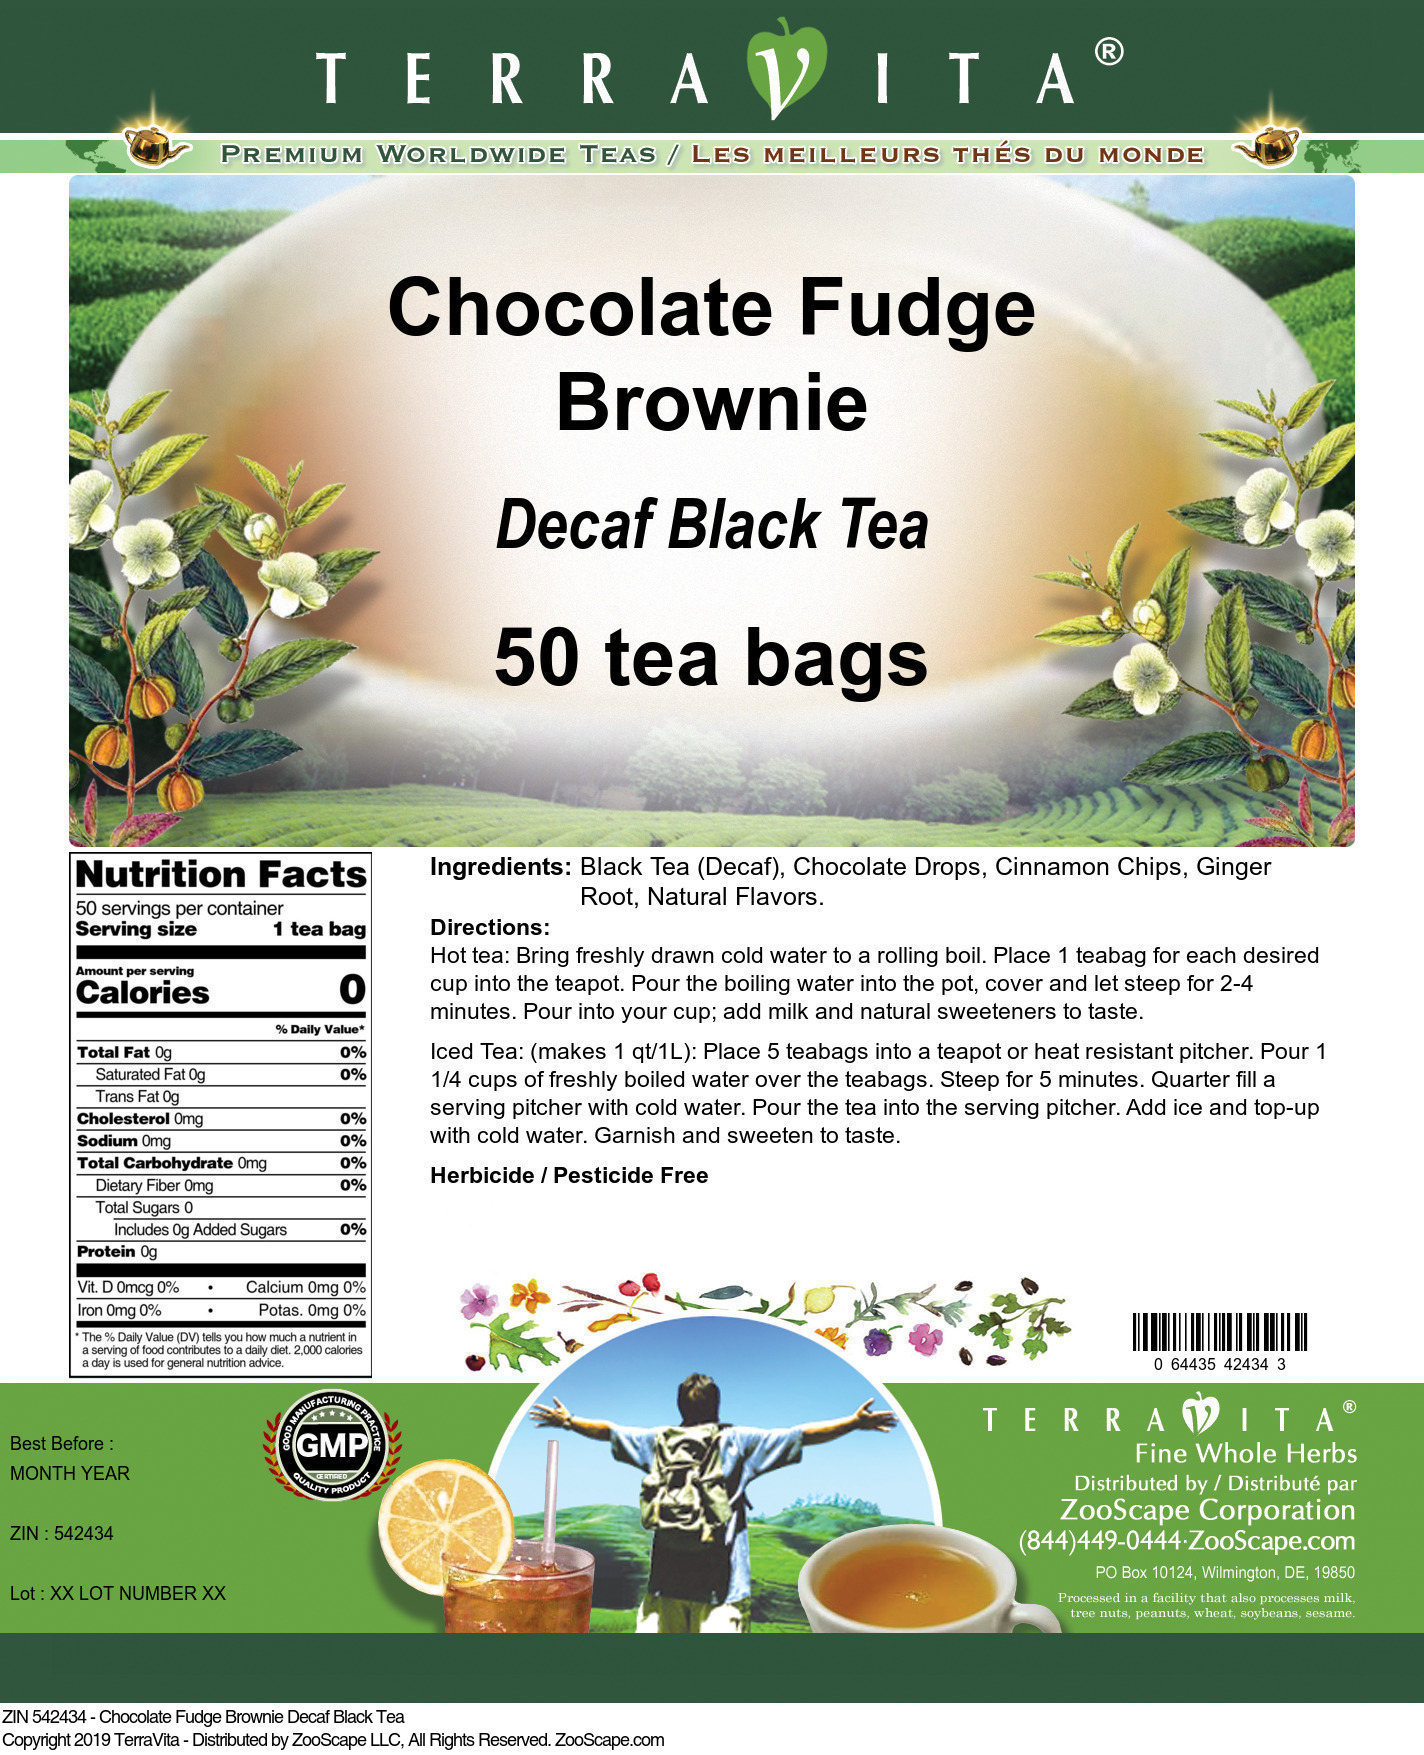 Chocolate Fudge Brownie Decaf Black Tea - Label